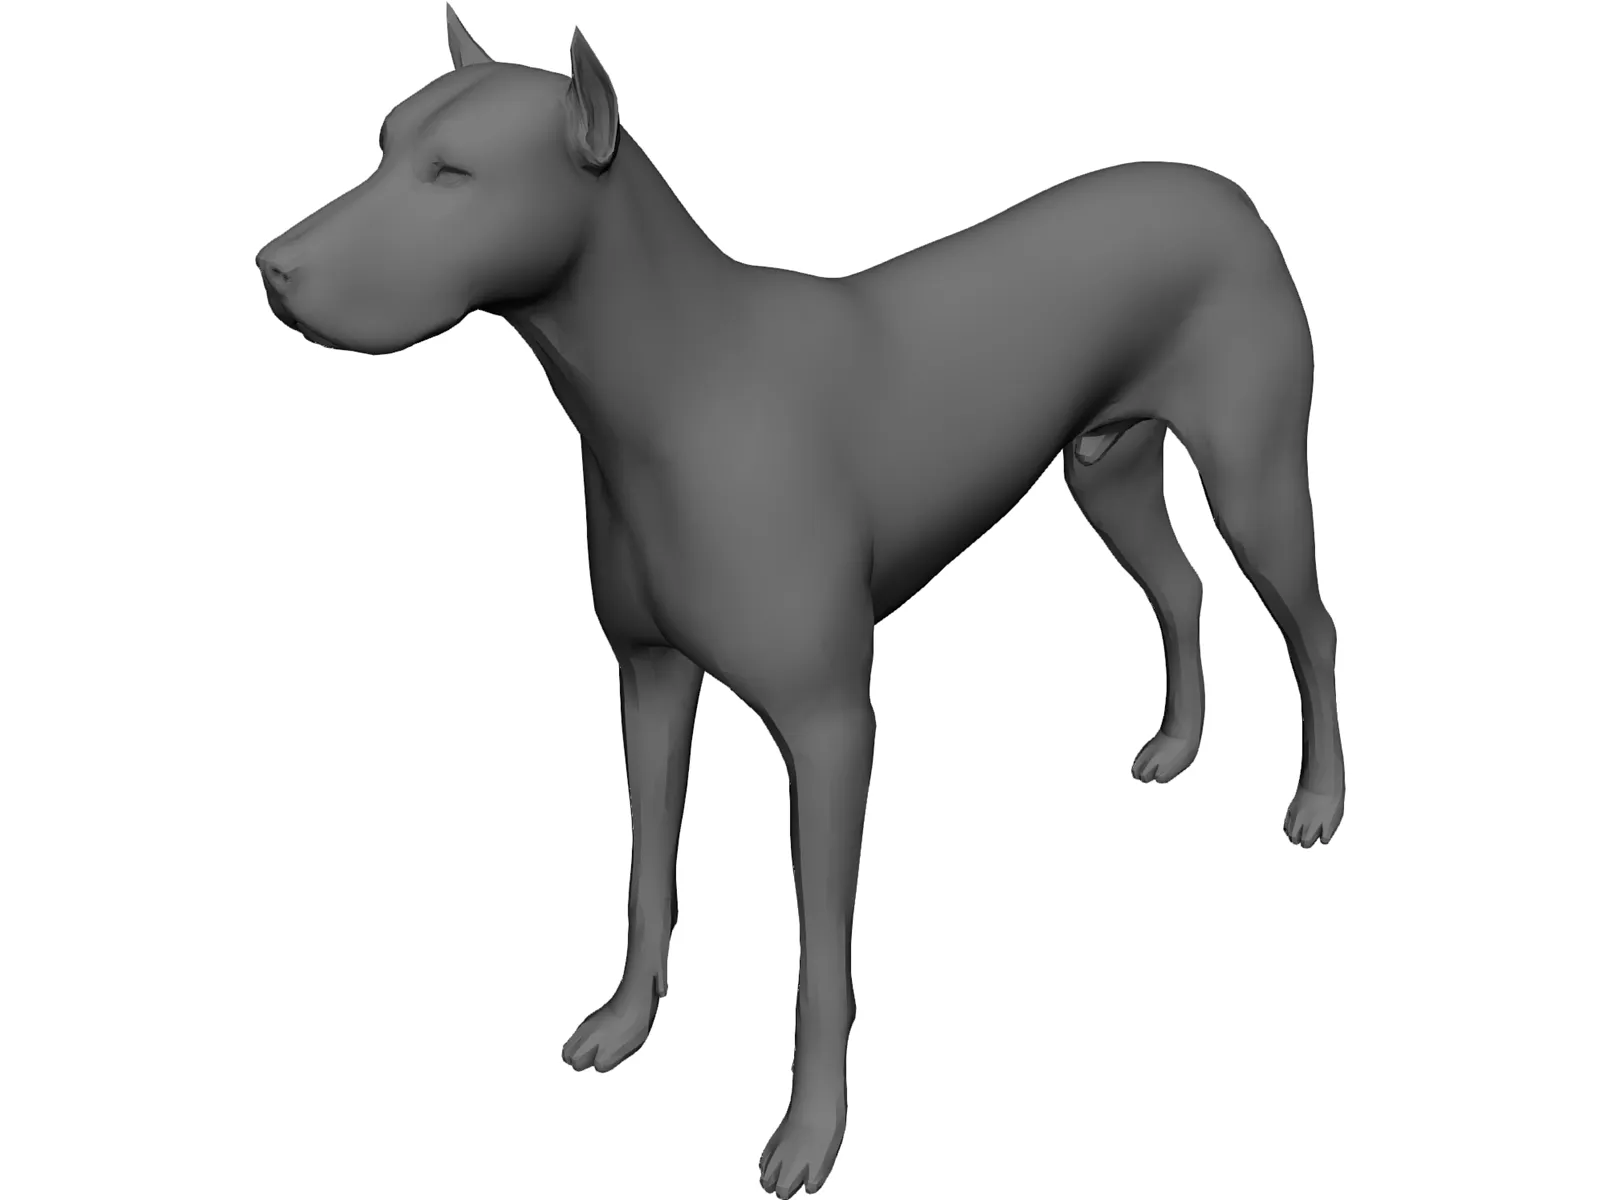 Dog 3D Model - 3D CAD Browser